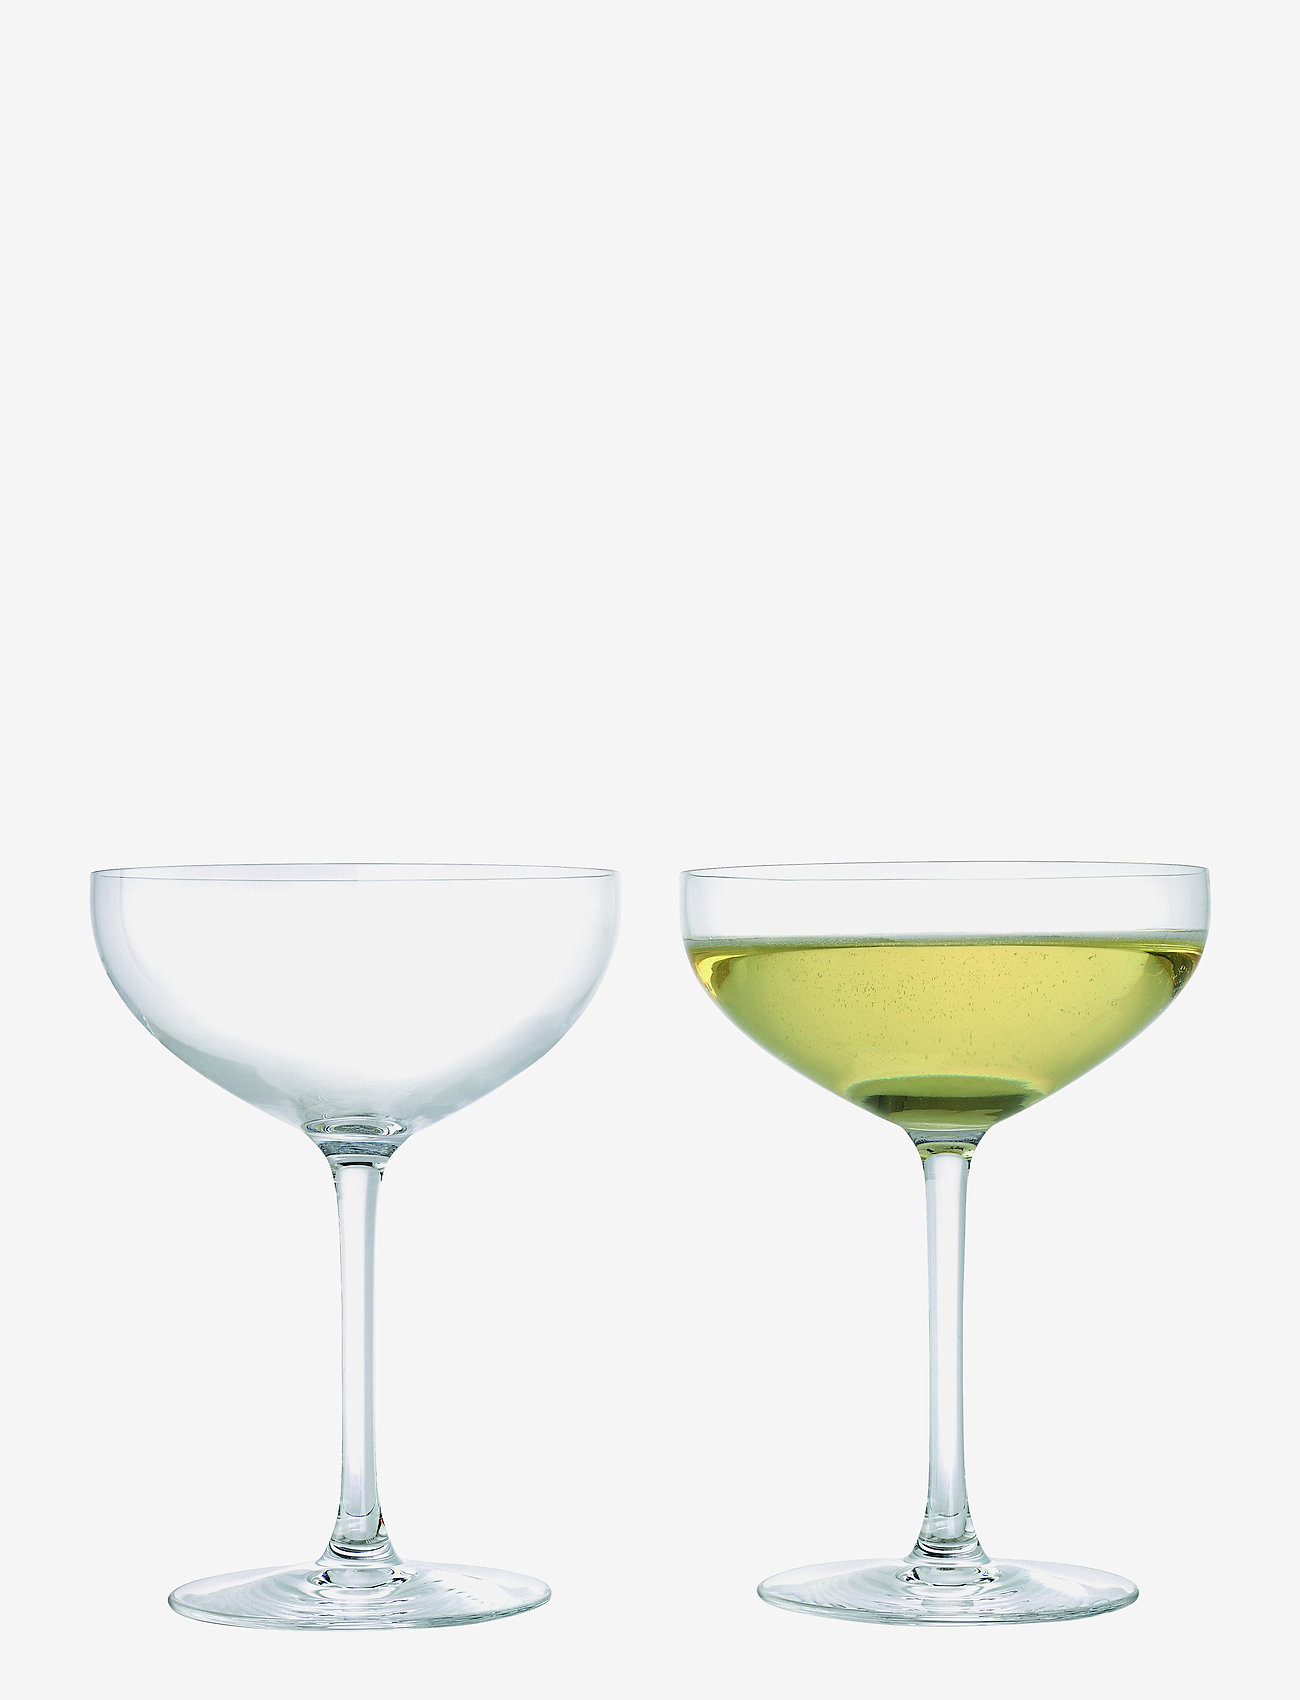 Rosendahl - Premium Champagneskål 39 cl klar 2 st. - lägsta priserna - clear - 0